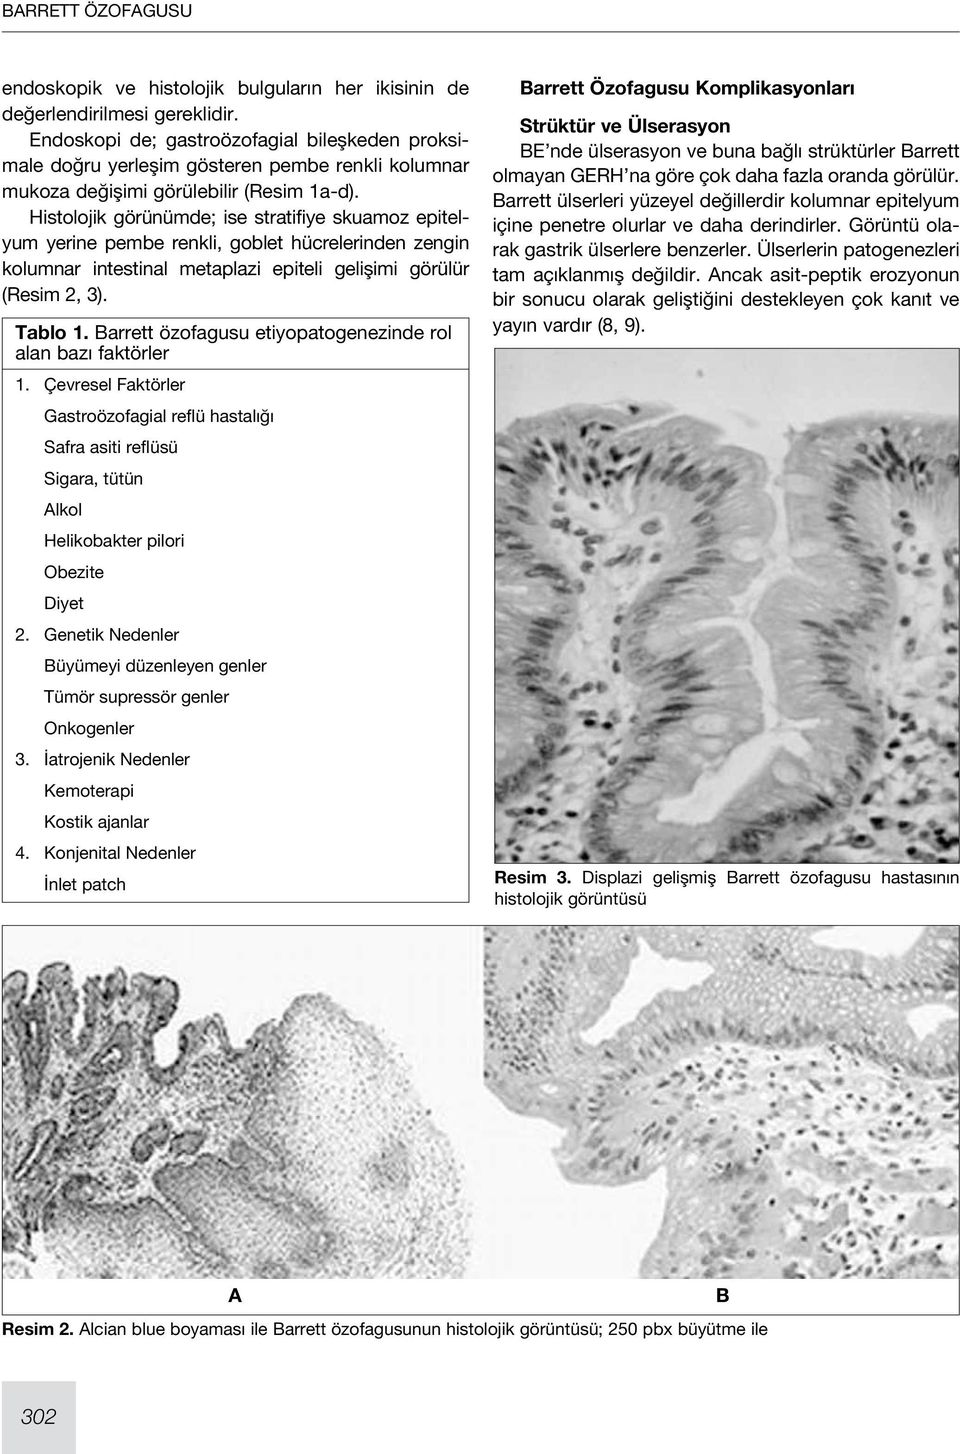 Histolojik görünümde; ise stratifiye skuamoz epitelyum yerine pembe renkli, goblet hücrelerinden zengin kolumnar intestinal metaplazi epiteli gelişimi görülür (Resim 2, 3). Tablo 1.